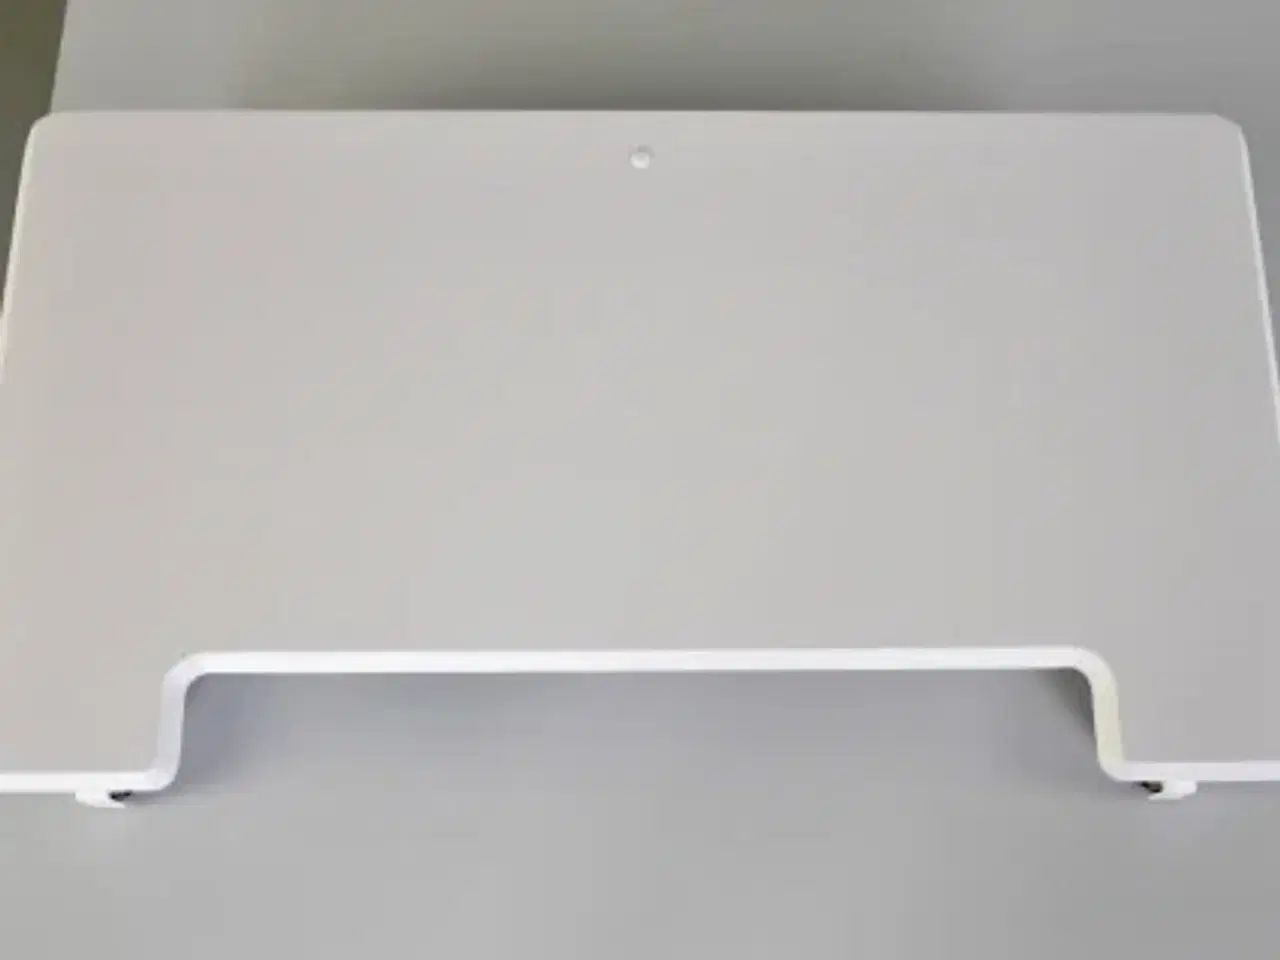 Billede 2 - Desk riser - omdan dit bord til et hæve-/sænkebord